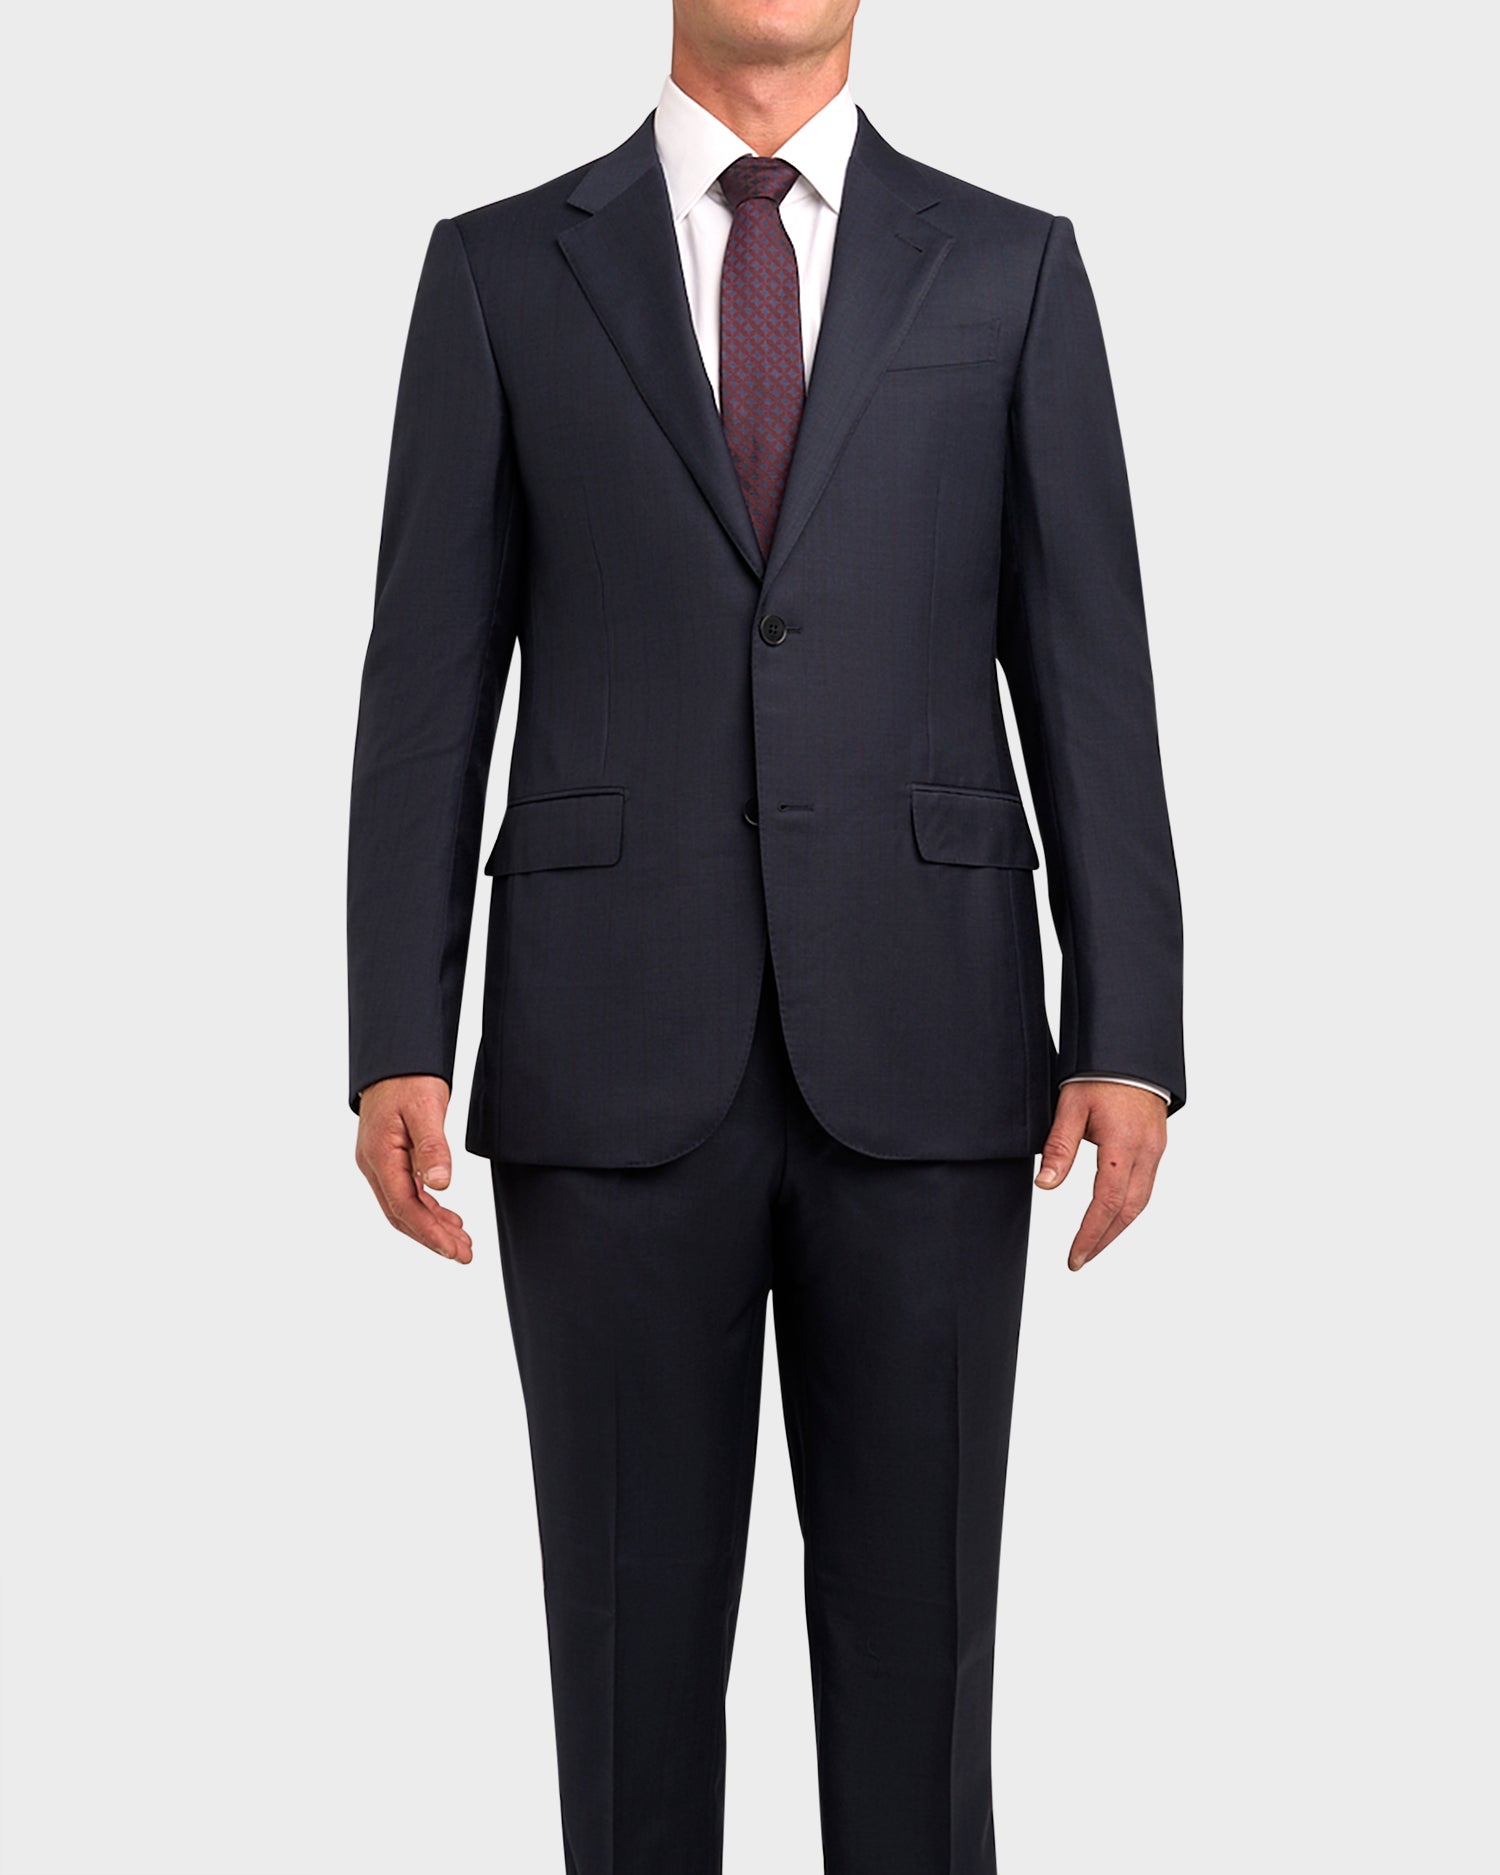 Dark Charcoal With Black Pinstripe 15MILMIL15 Wool suit